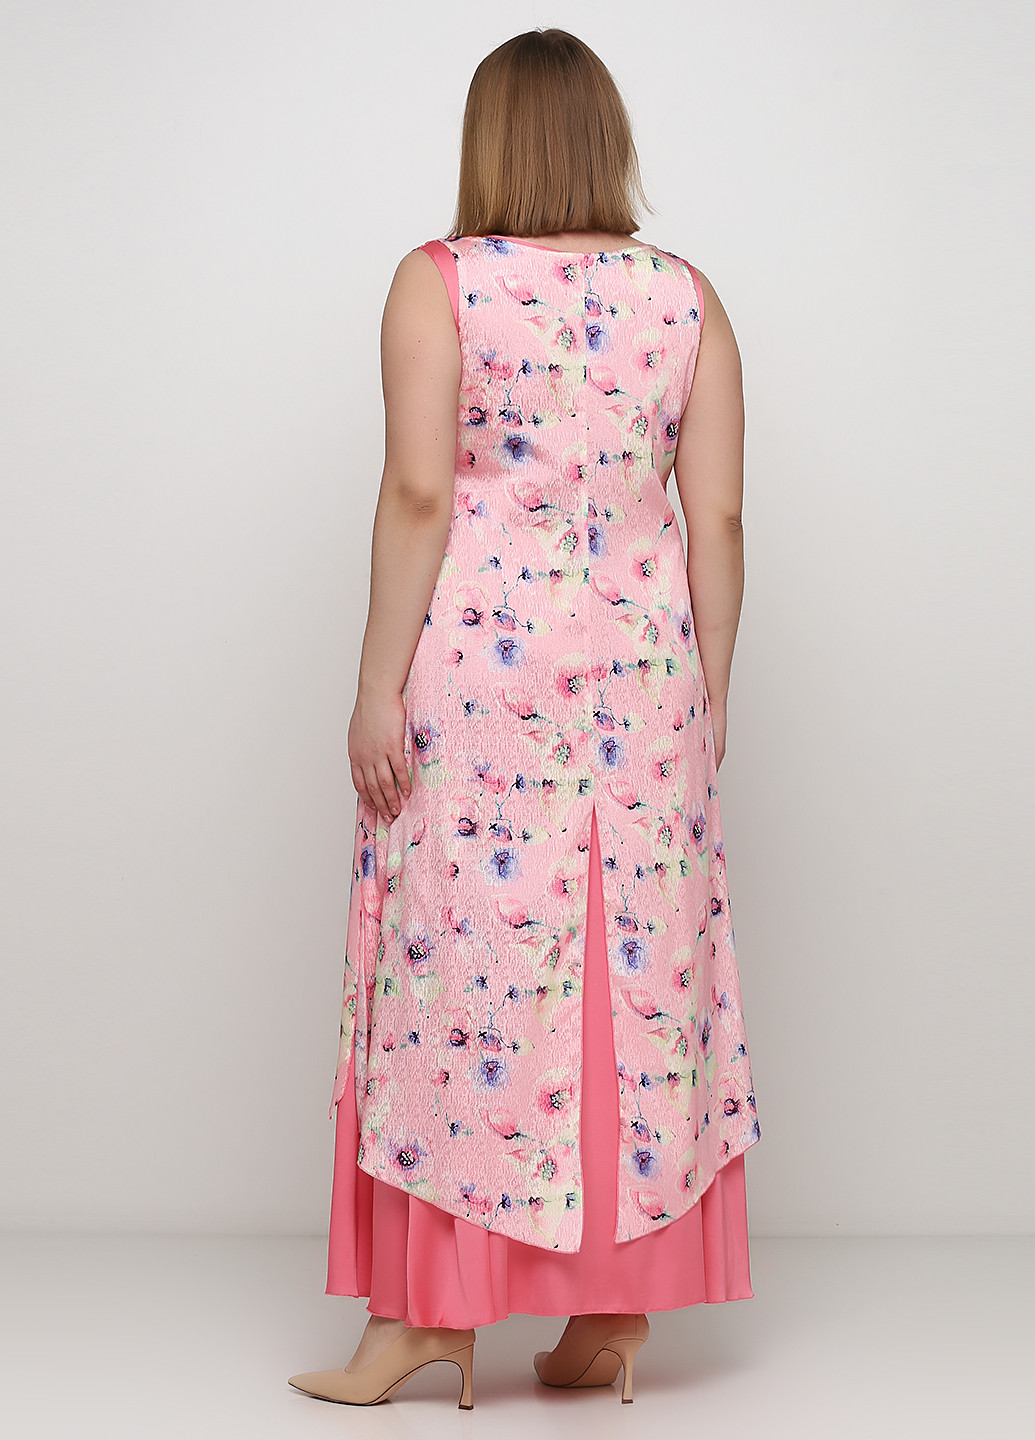 Рожевий літній комплект (плаття, накидка) Алеся